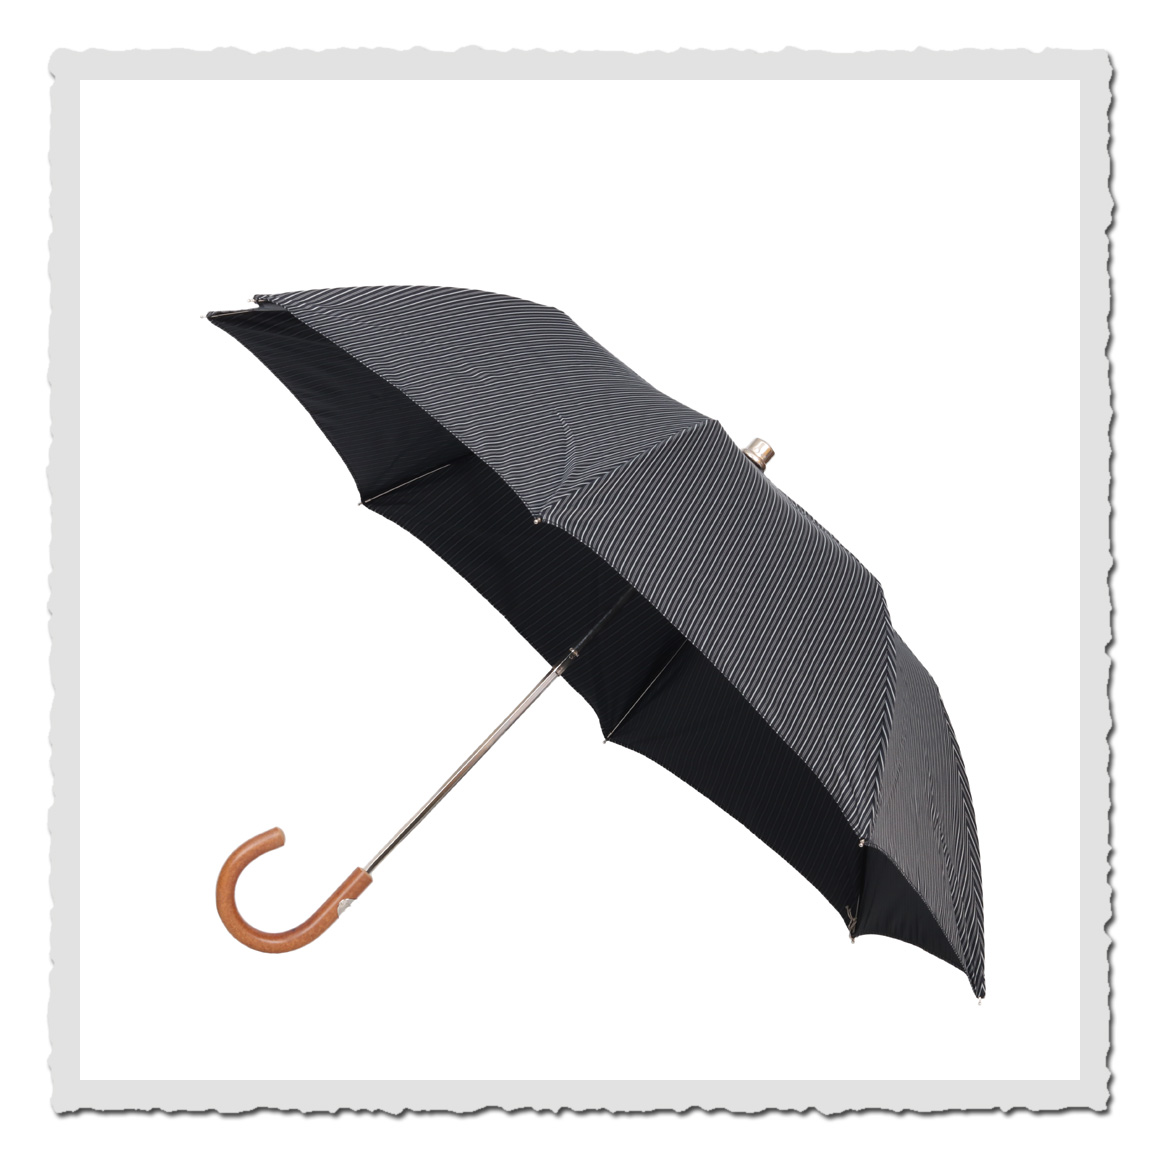 Taschen-Regenschirm Borsa schwarz/grau